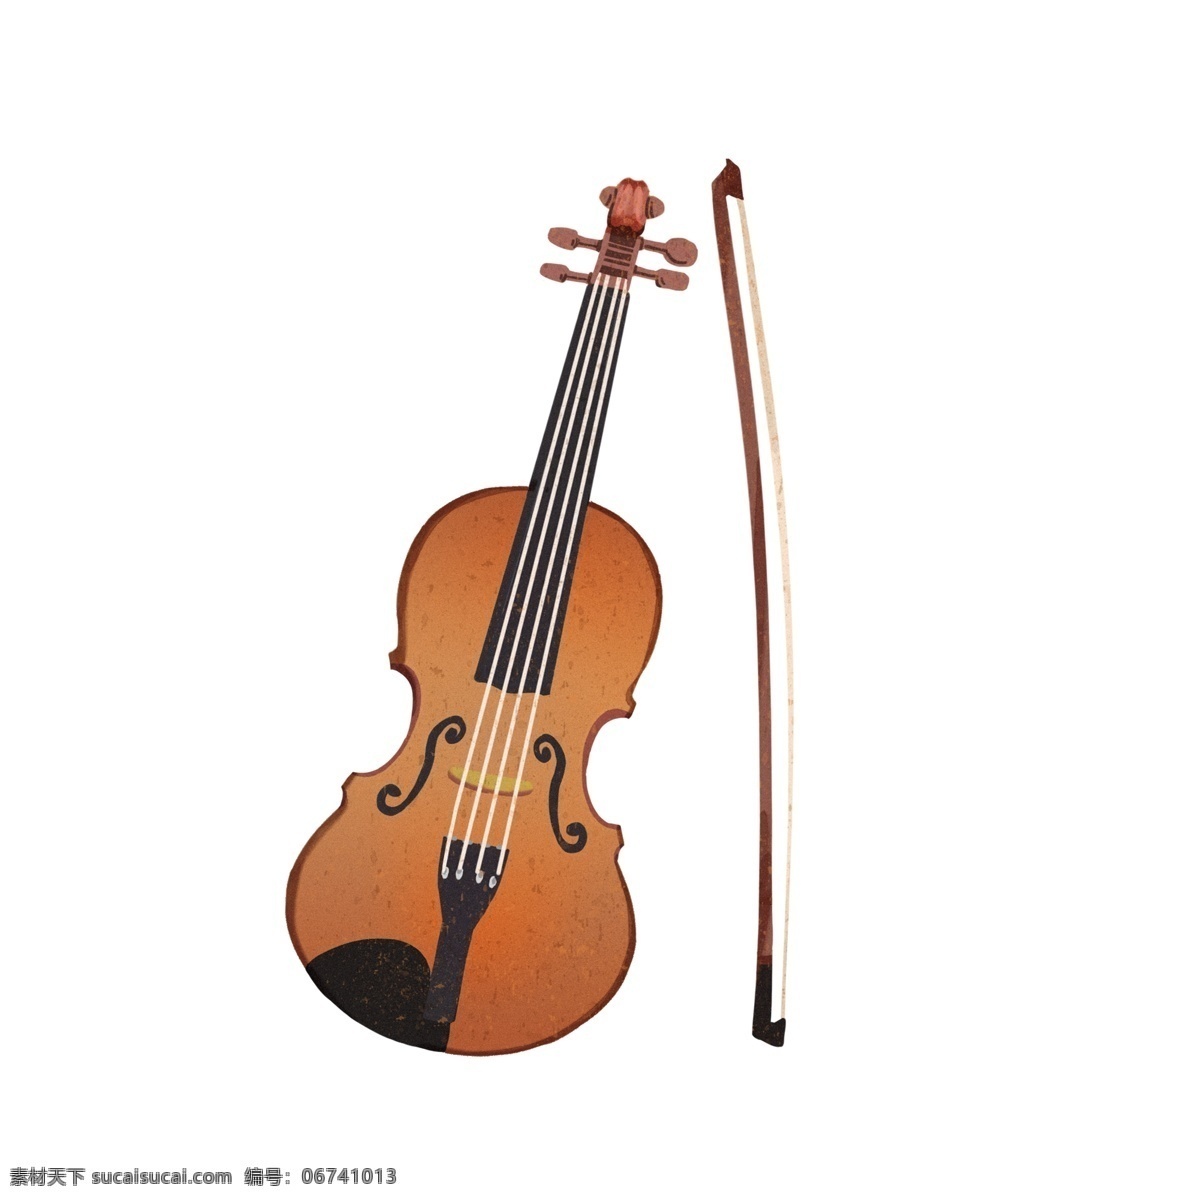 西洋 乐器 大提琴 插画 弦乐器 西洋乐器插画 红色大提琴 伴奏乐器 弦 音乐 艺术 古典